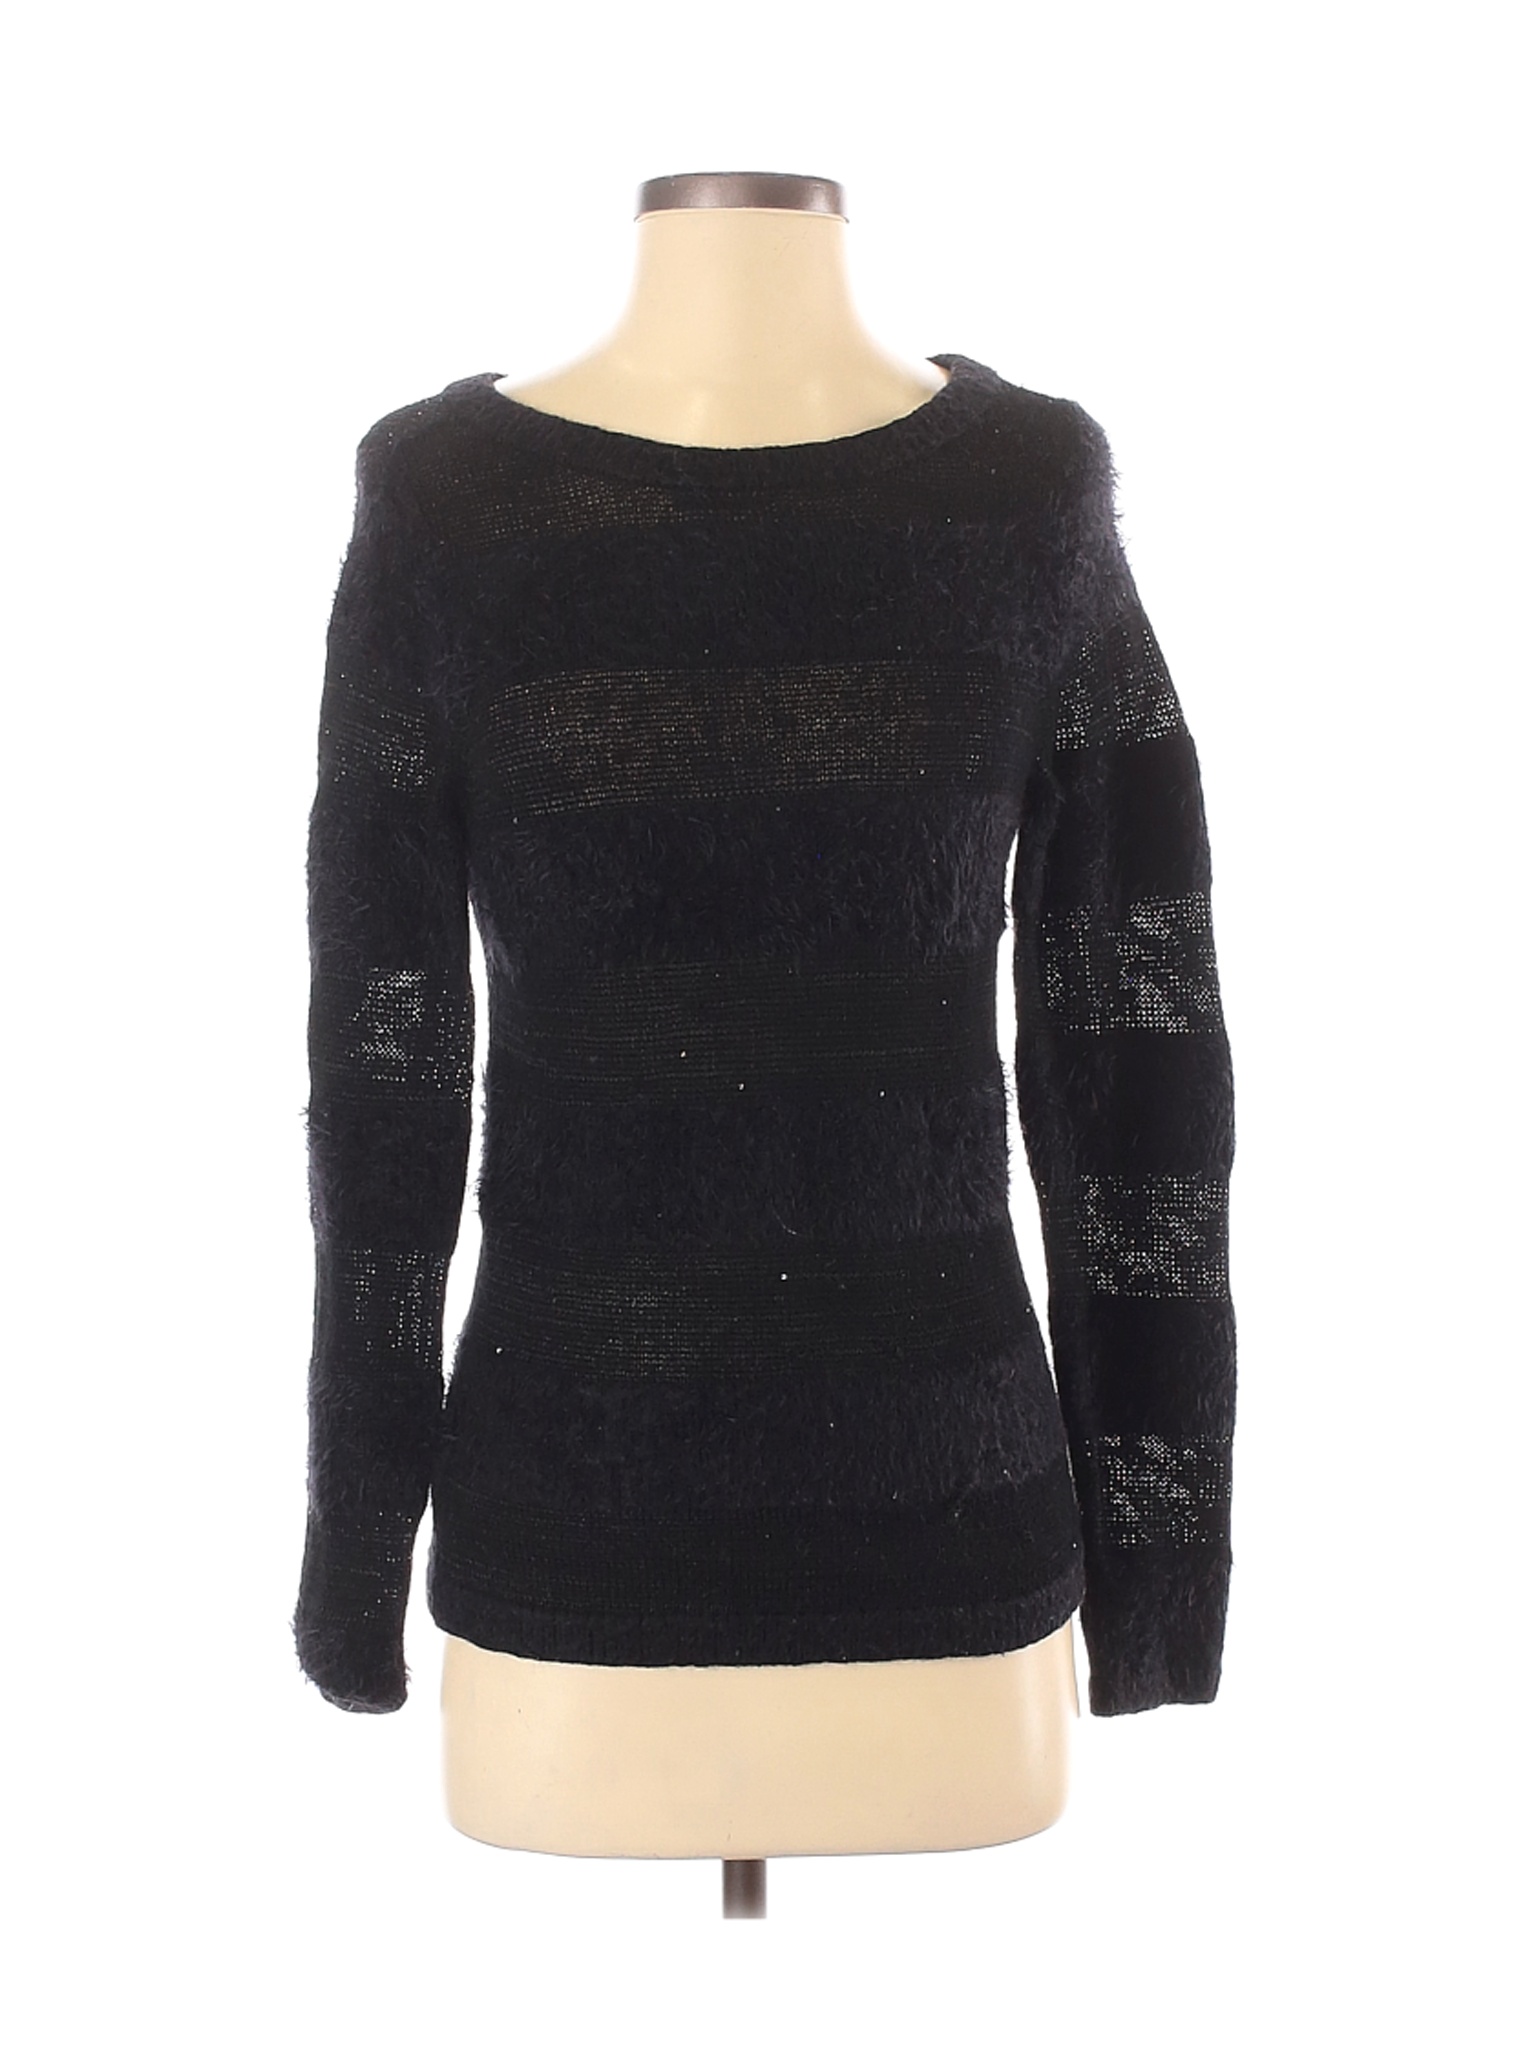 Ann Taylor LOFT Women Black Pullover Sweater XS | eBay